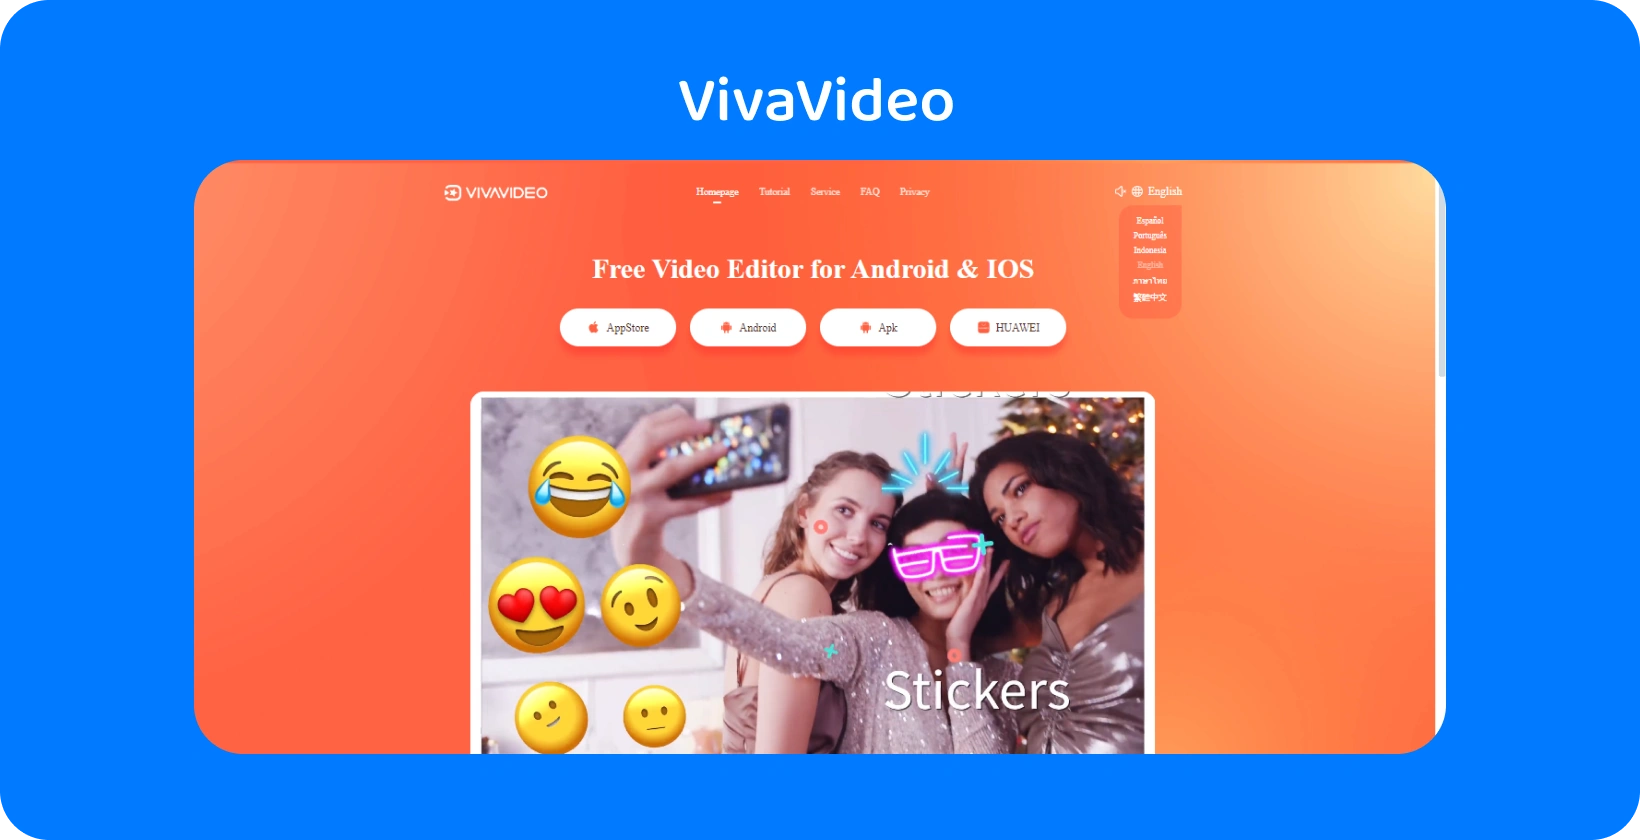 鮮やかなオレンジ色の背景を持つVivaVideoアプリページで、AndroidおよびiOSでビデオを強化するためのステッカー機能を紹介しています。
